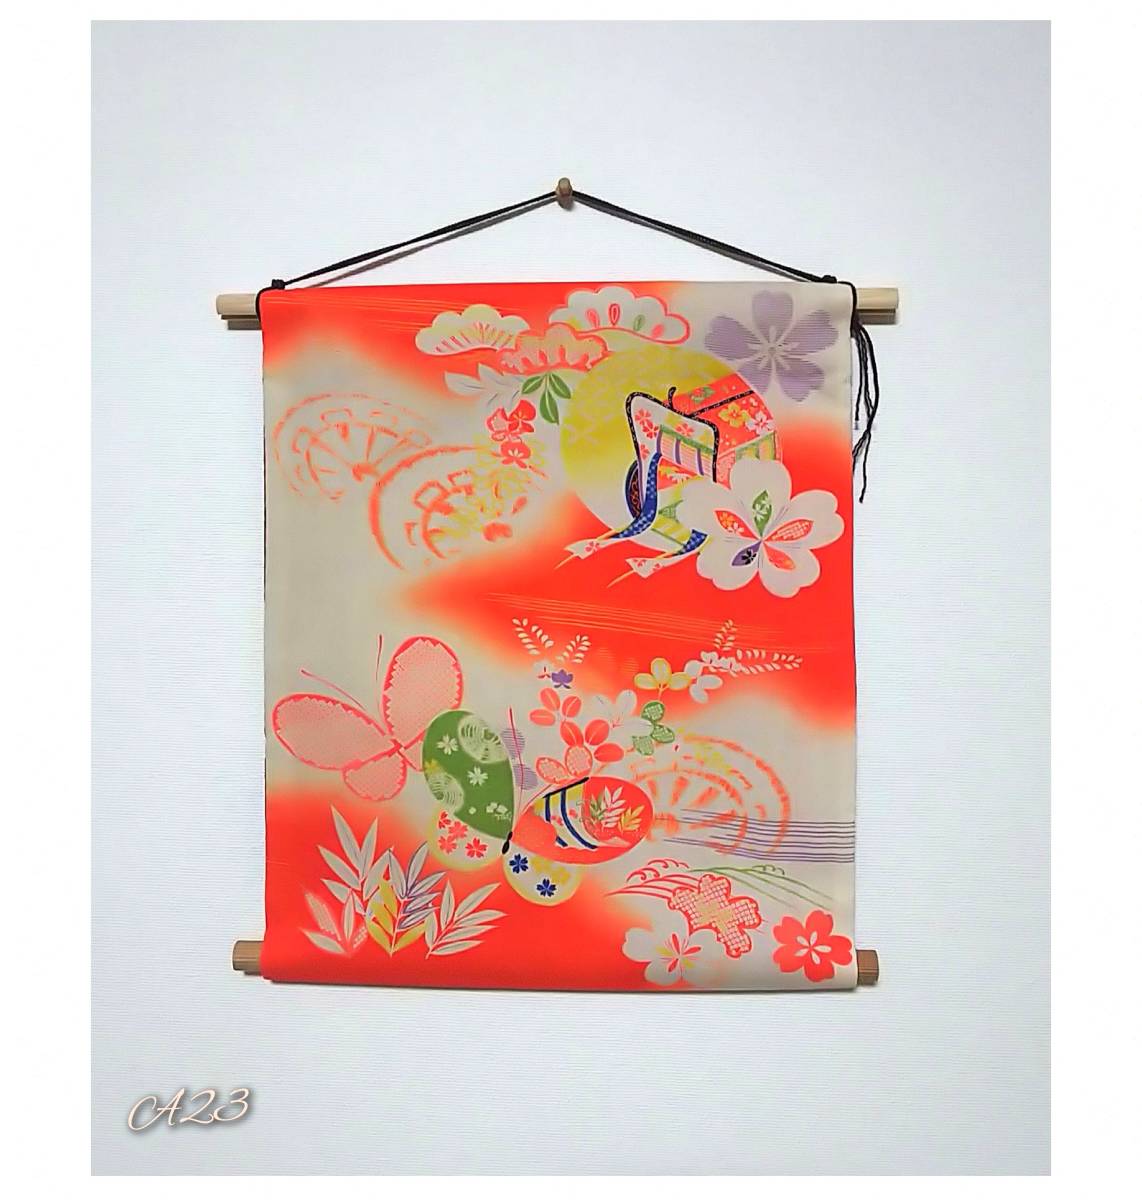 Kimono refaire une jolie tapisserie murale suspendue à la main, couture, broderie, Produit fini, autres